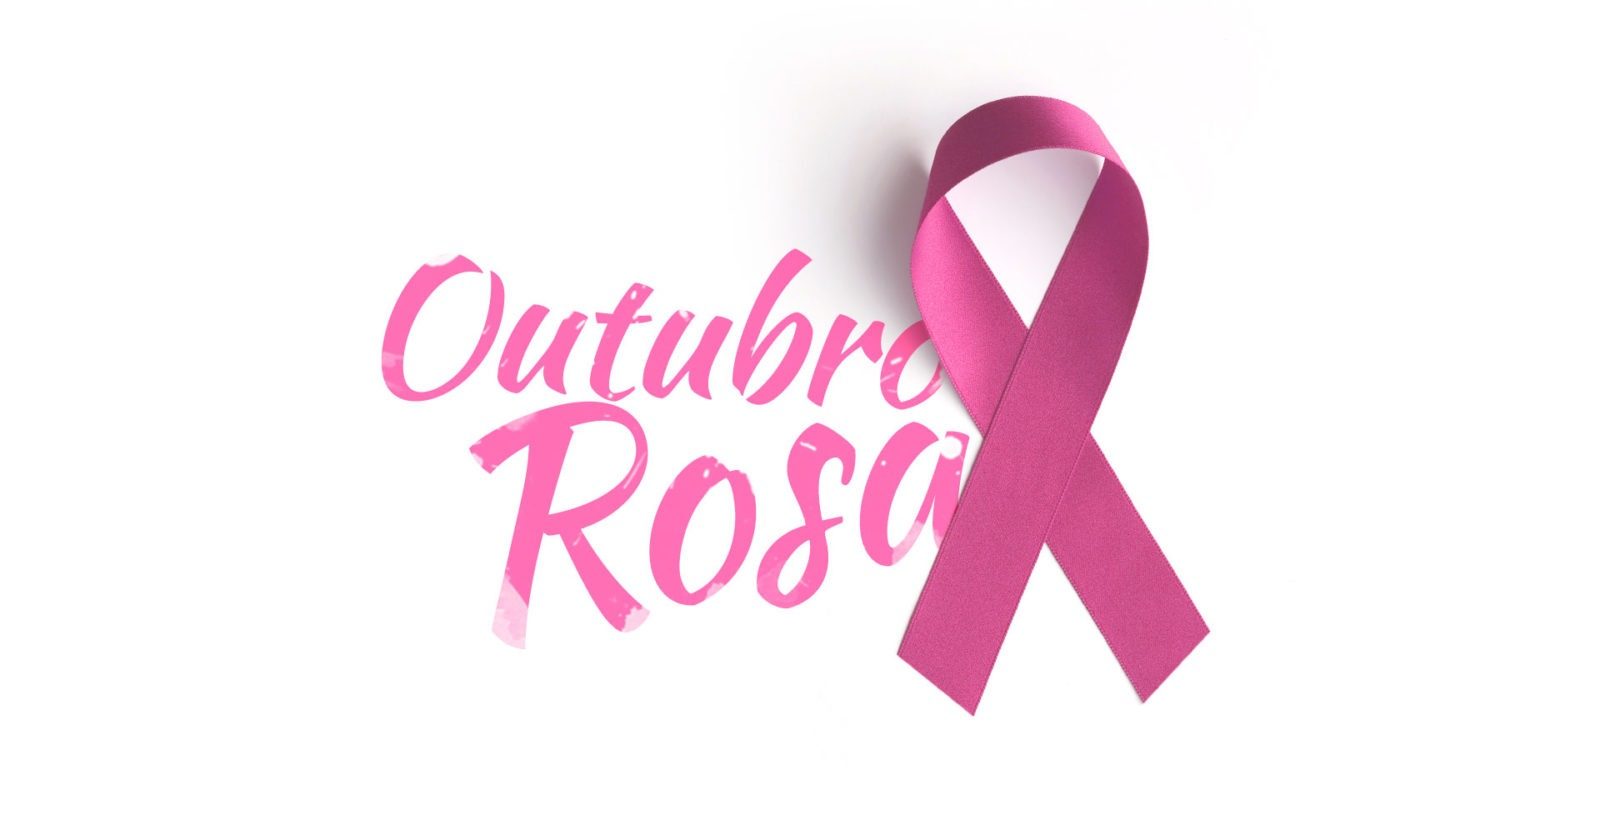 Atividades do ‘Outubro Rosa’ terminam nesta terça-feira (30) em Itararé (SP)